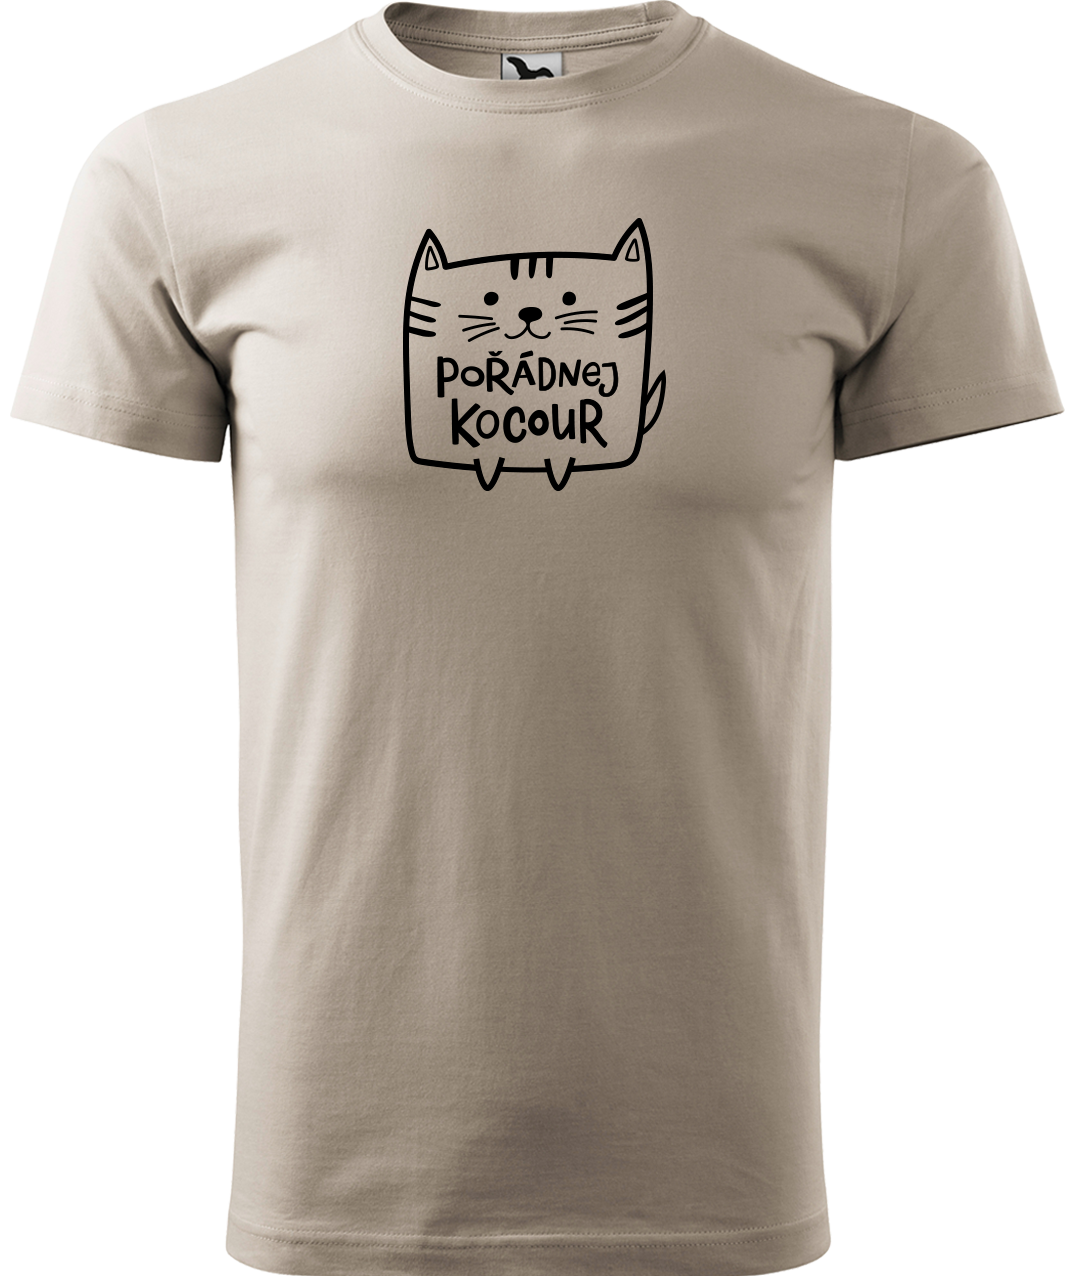 Pánské tričko s kočkou - Pořádnej kocour Velikost: L, Barva: Ledově šedá (51)